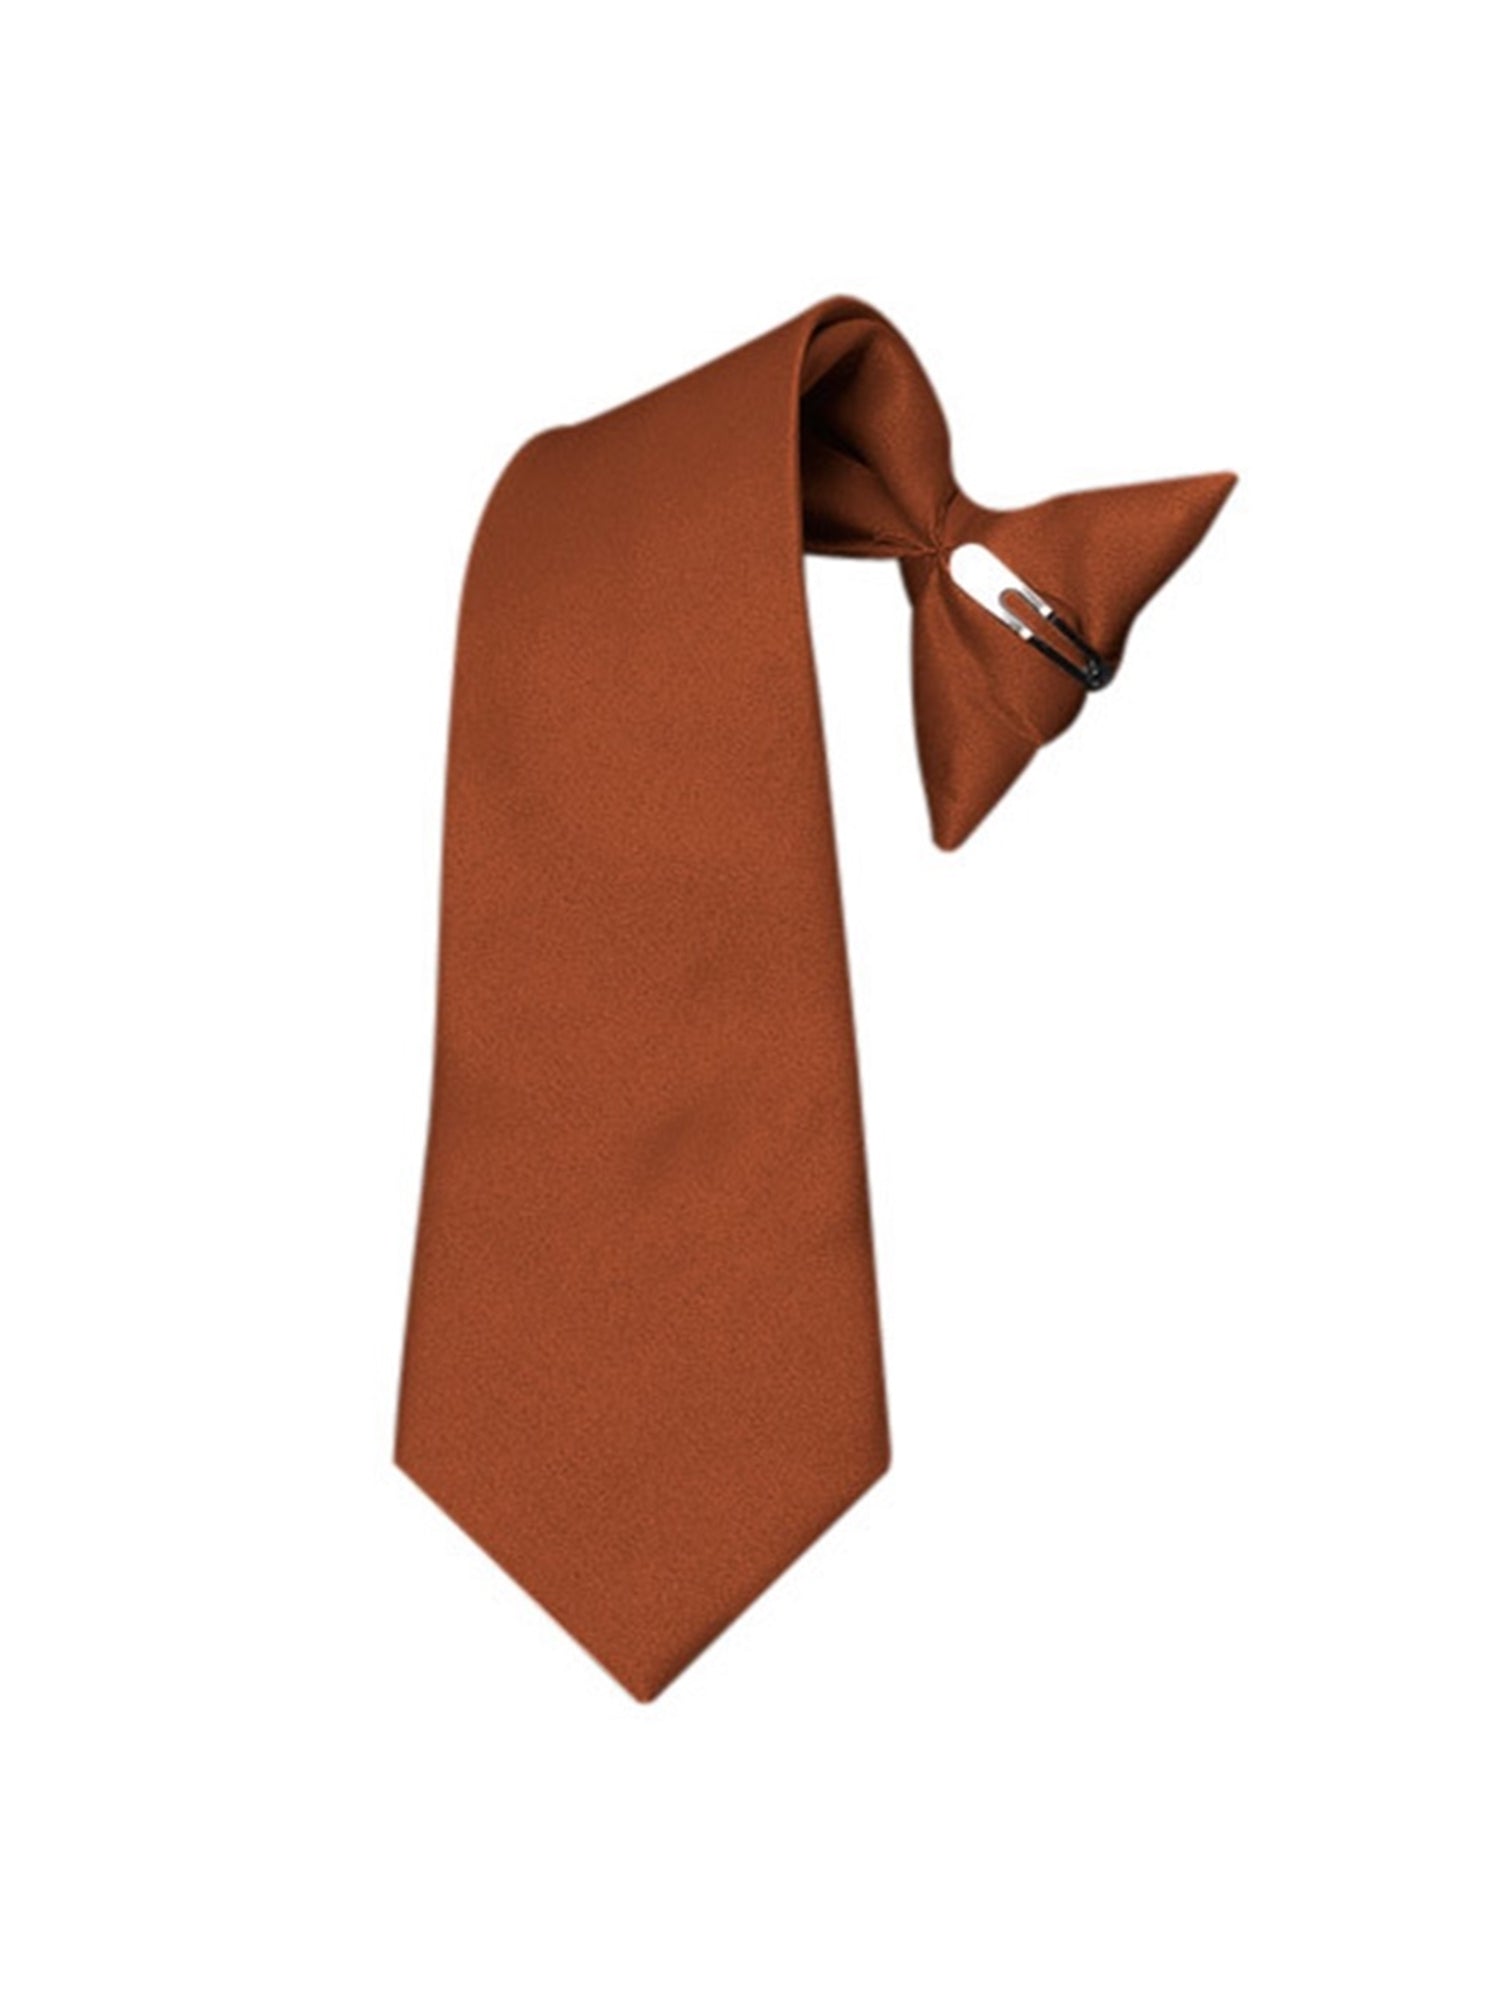 Boy's Solid Color Pre-tied Clip On Neck Tie Neck Tie TheDapperTie   